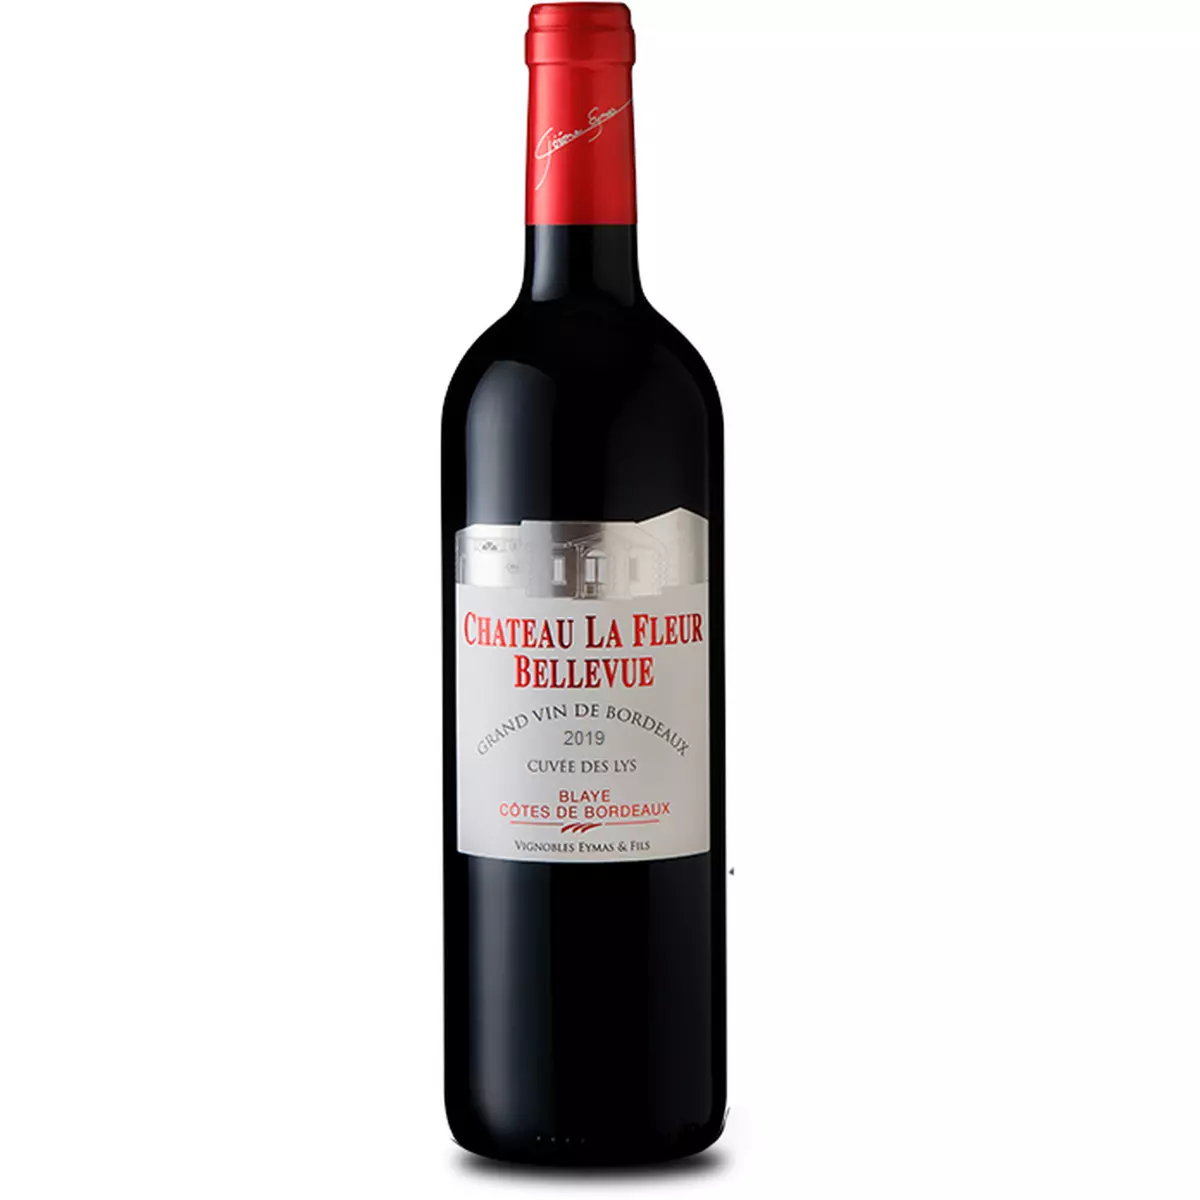 Vin rouge AOP Côtes de Bordeaux Blaye Château la fleur Bellevue 2019 75cl